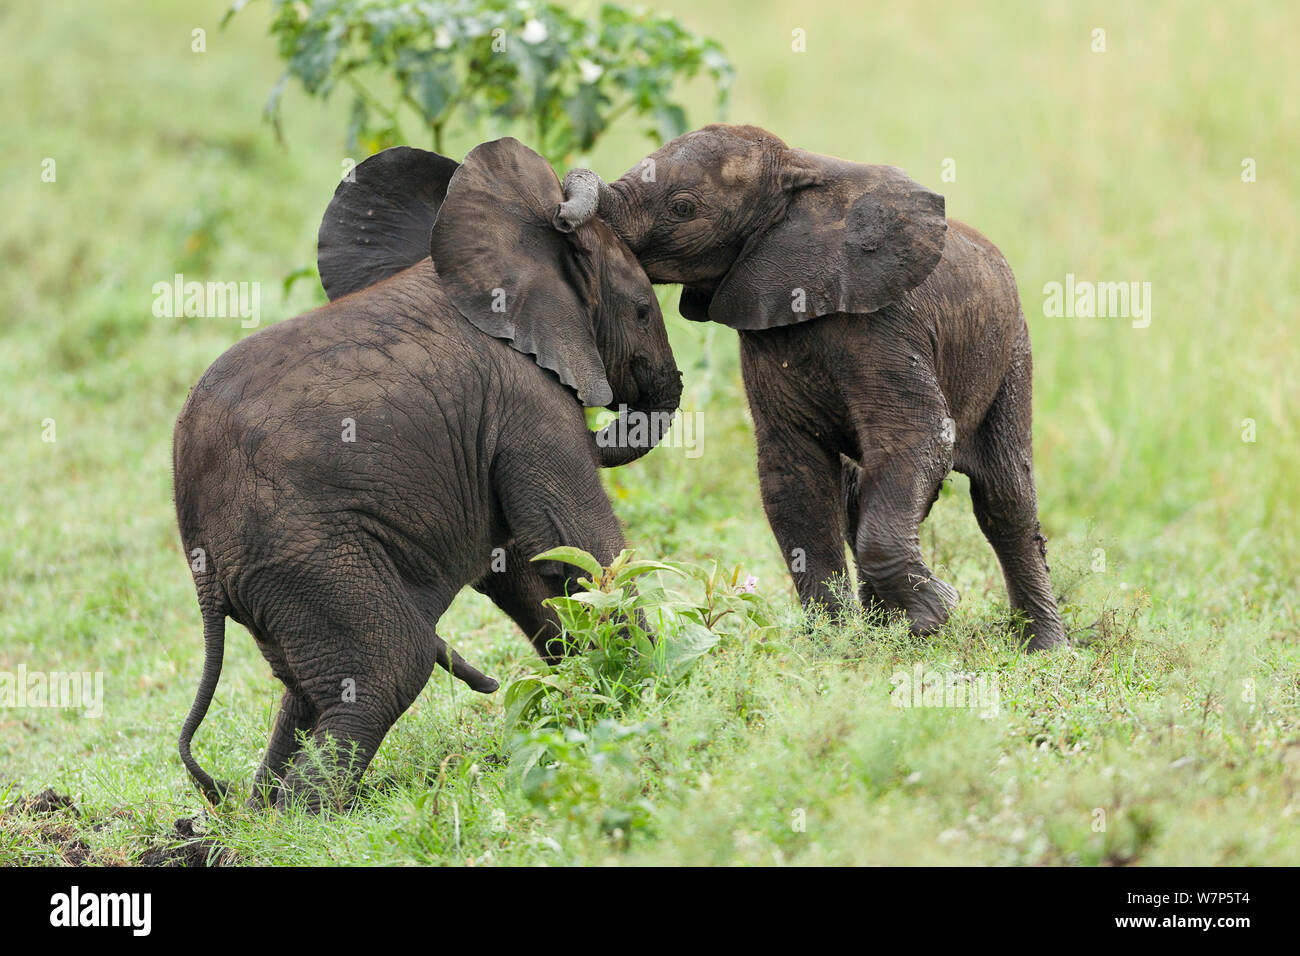 L'éléphant africain (Loxodonta africana) les bébés à jouer. Masai-Mara Game Reserve, Kenya. Banque D'Images